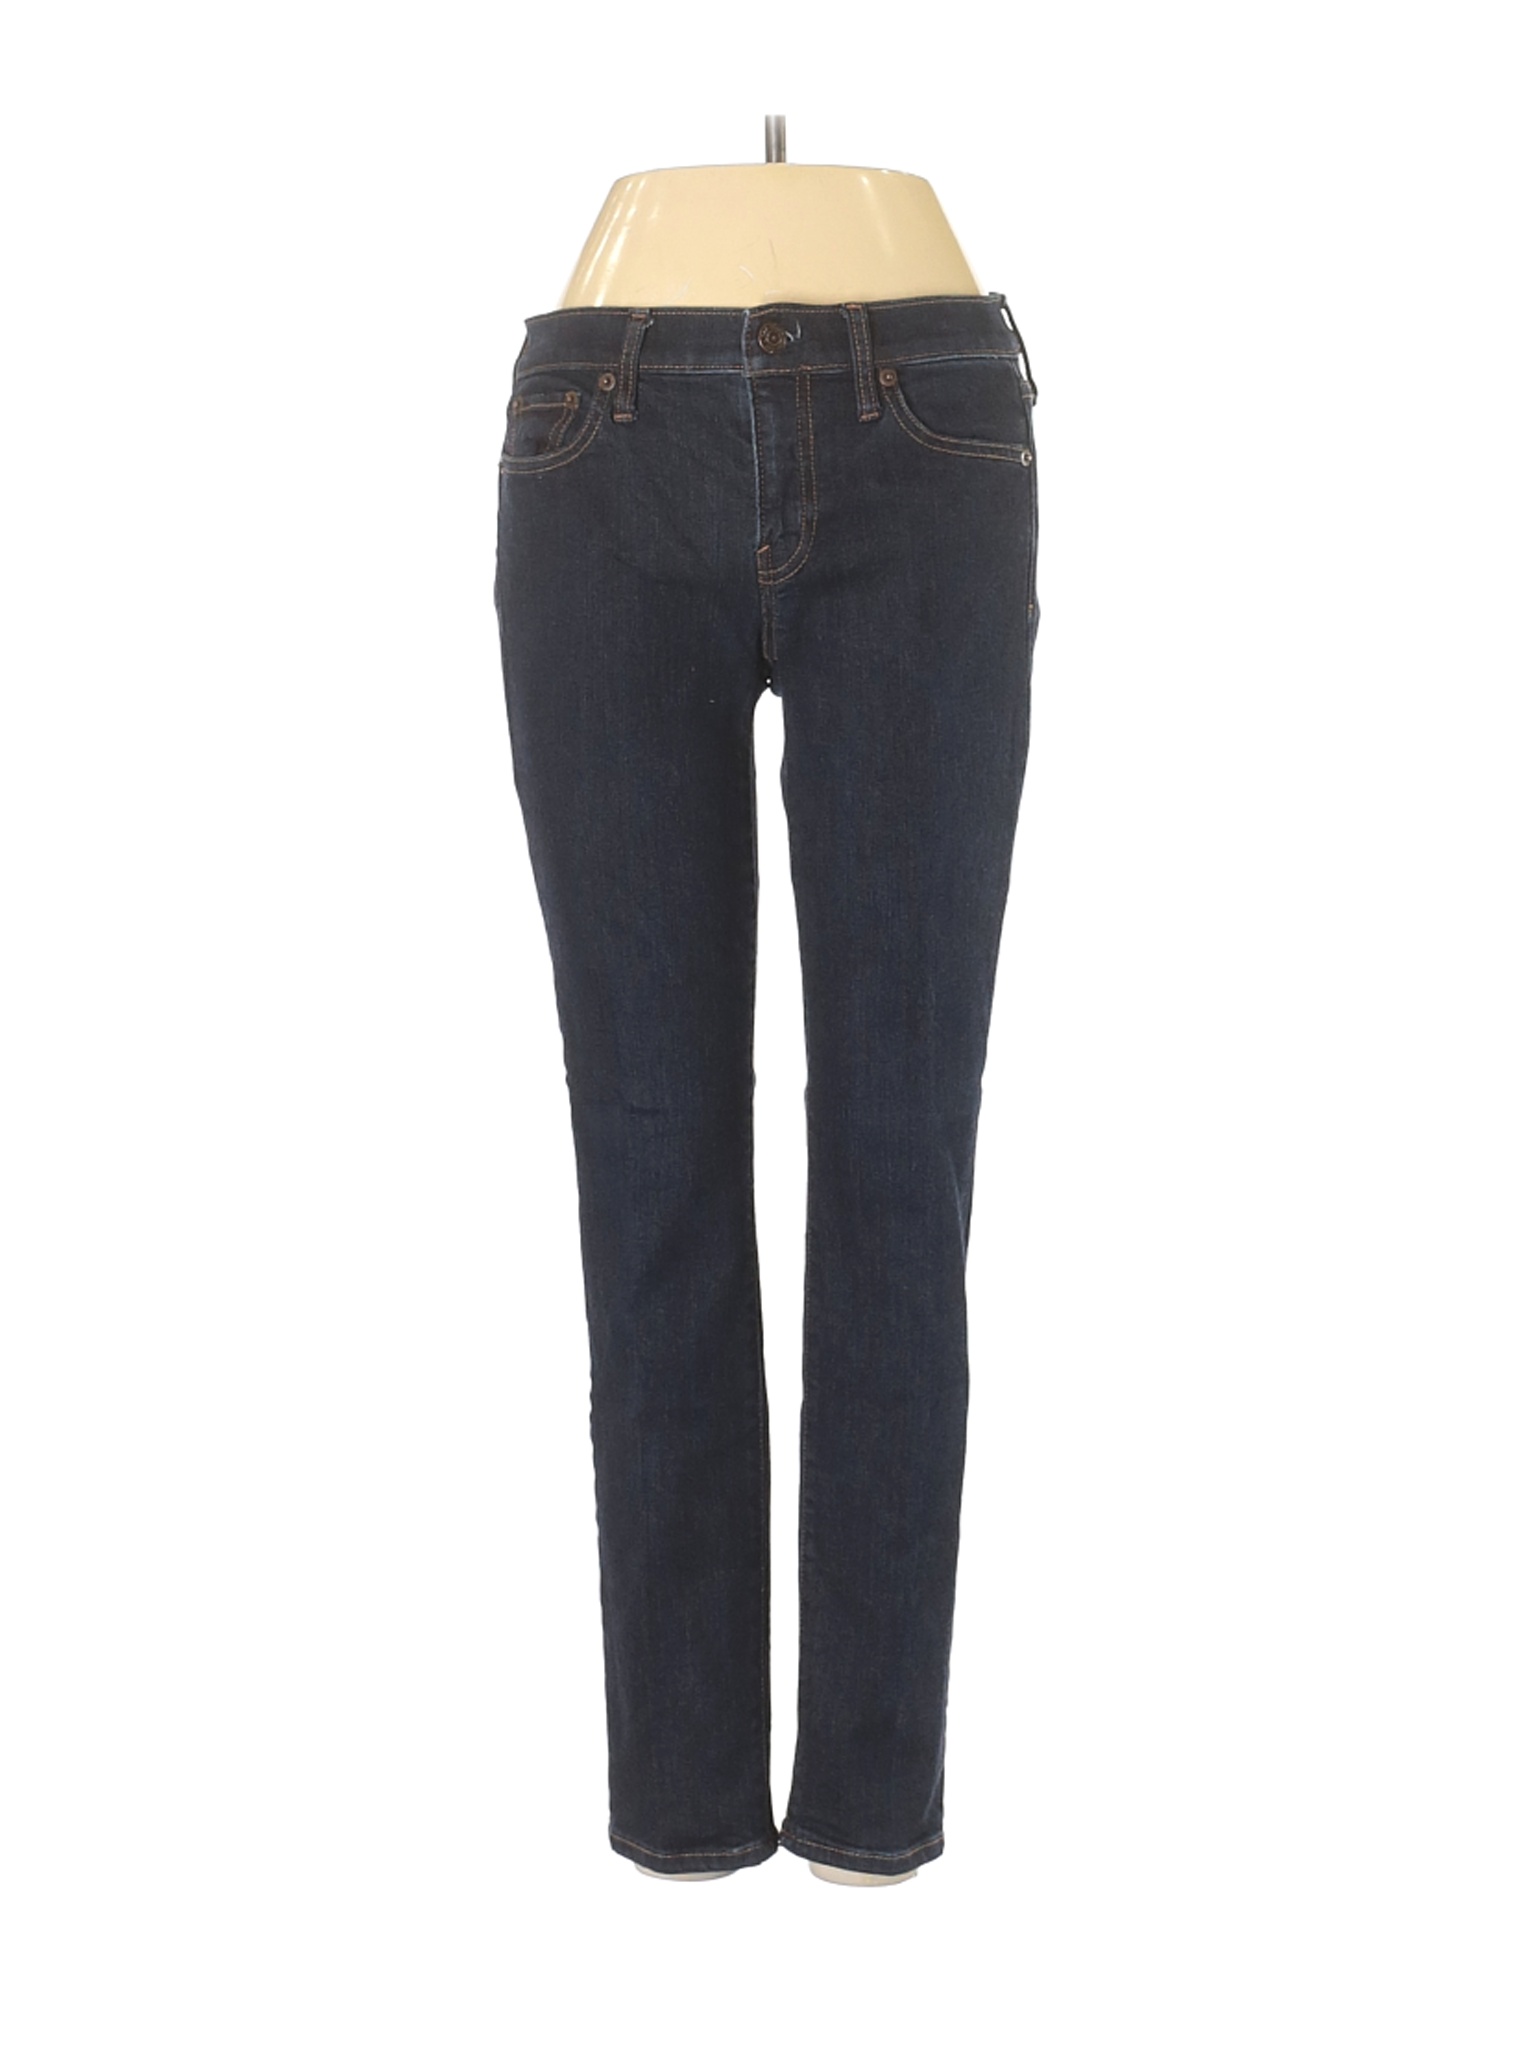 Gap Women Blue Jeans 24 W Petites | eBay